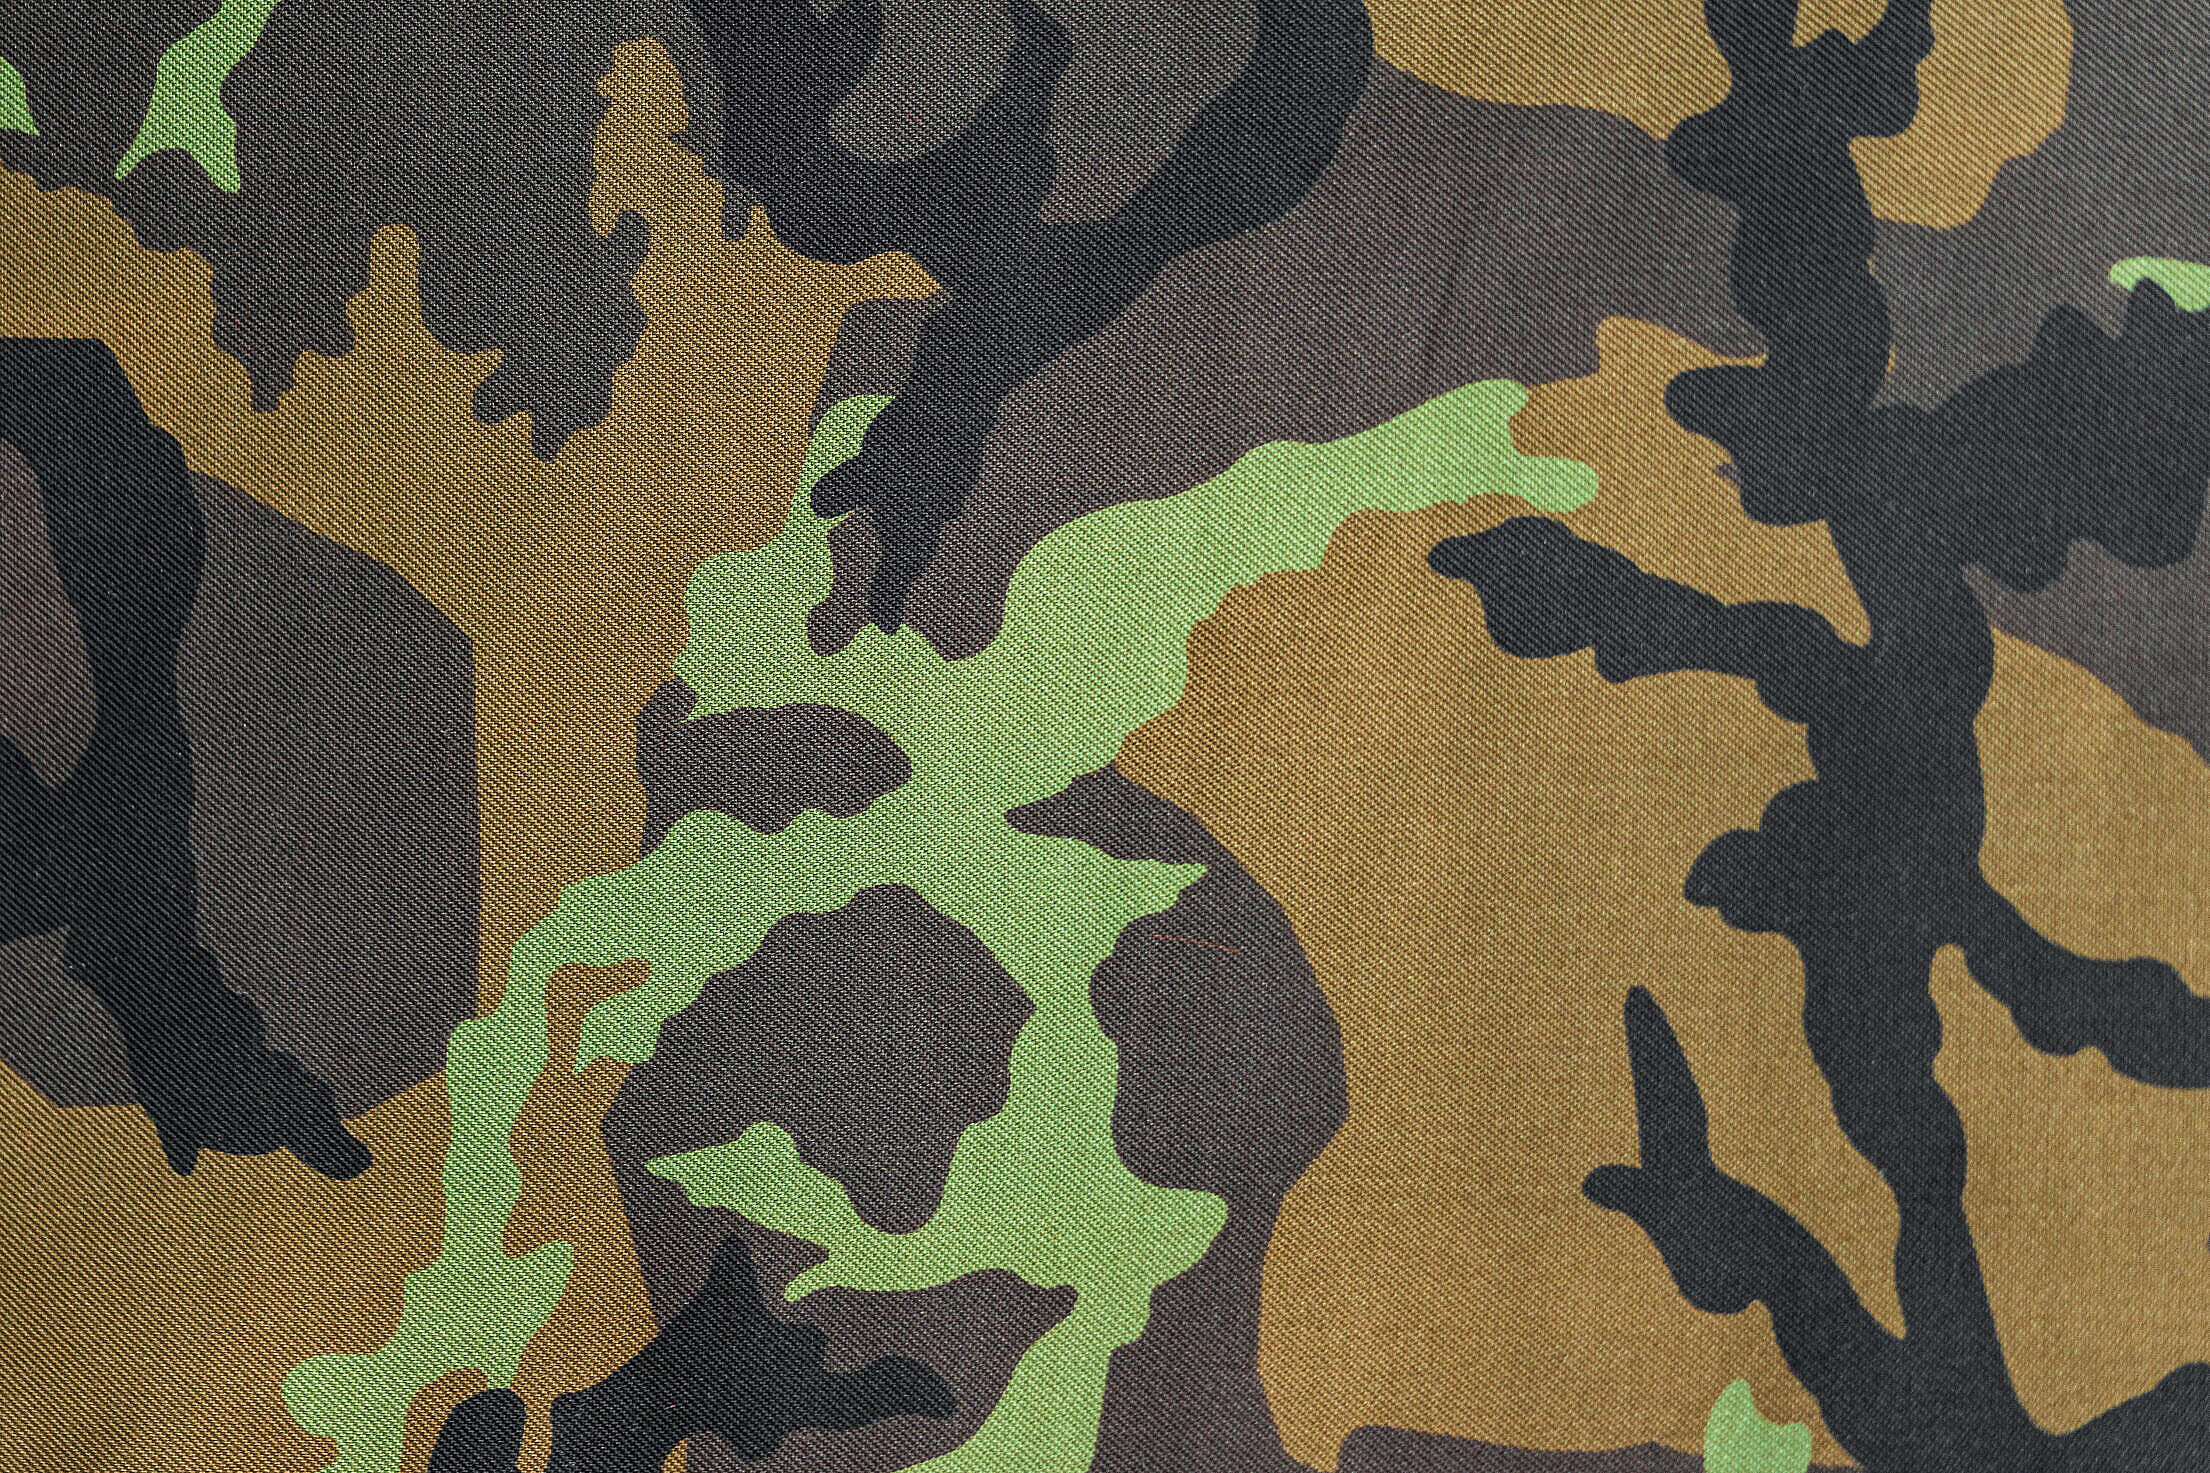 Army Camouflage Pattern Free Stock Photo | picjumbo